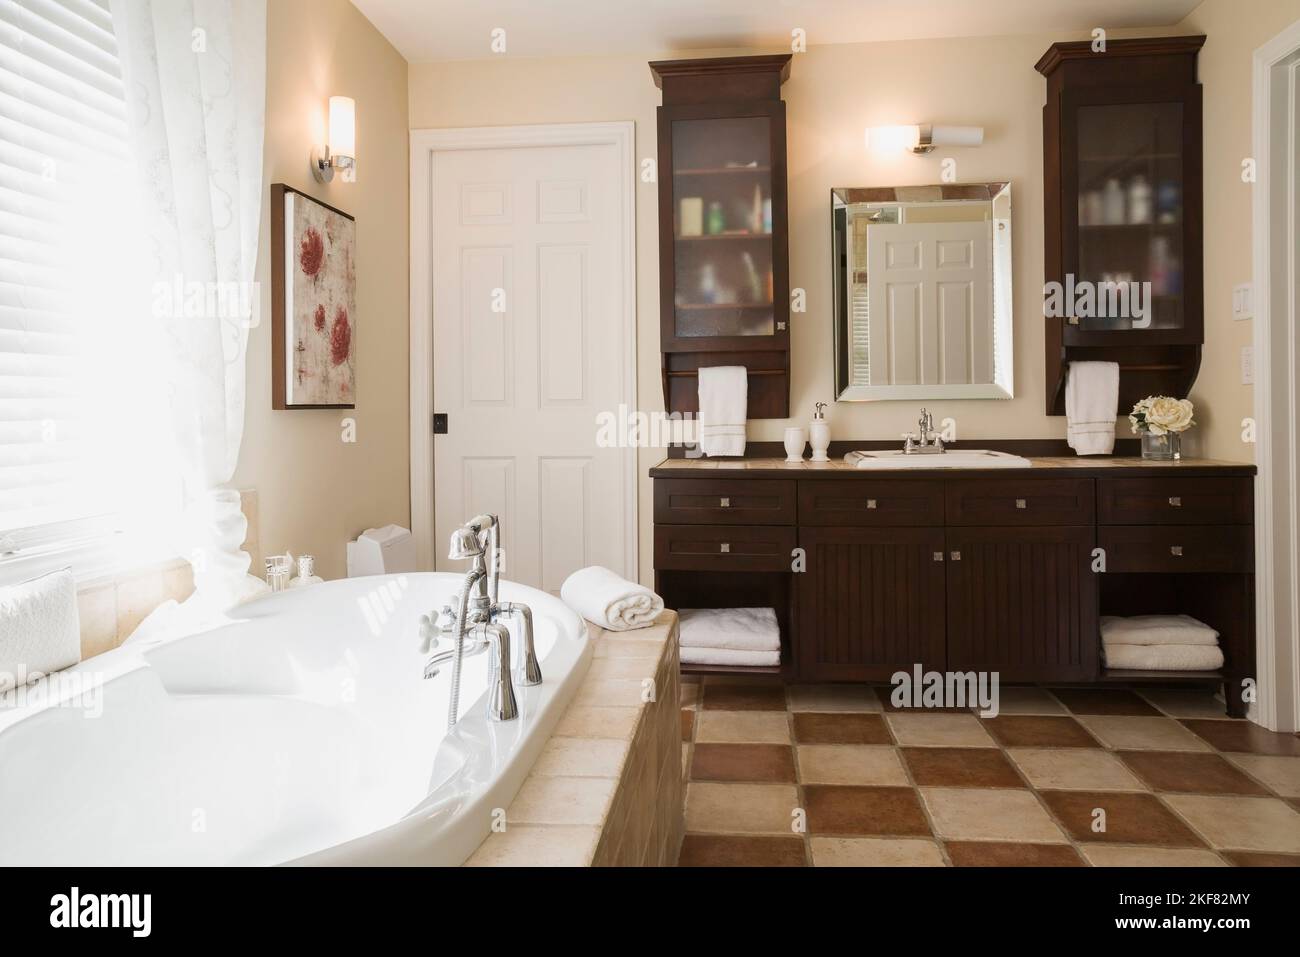 Baignoire profonde encastrée dans une base en céramique marron et beige et vanité en bois dans la salle de bains principale à l'étage à l'intérieur de la maison contemporaine. Banque D'Images